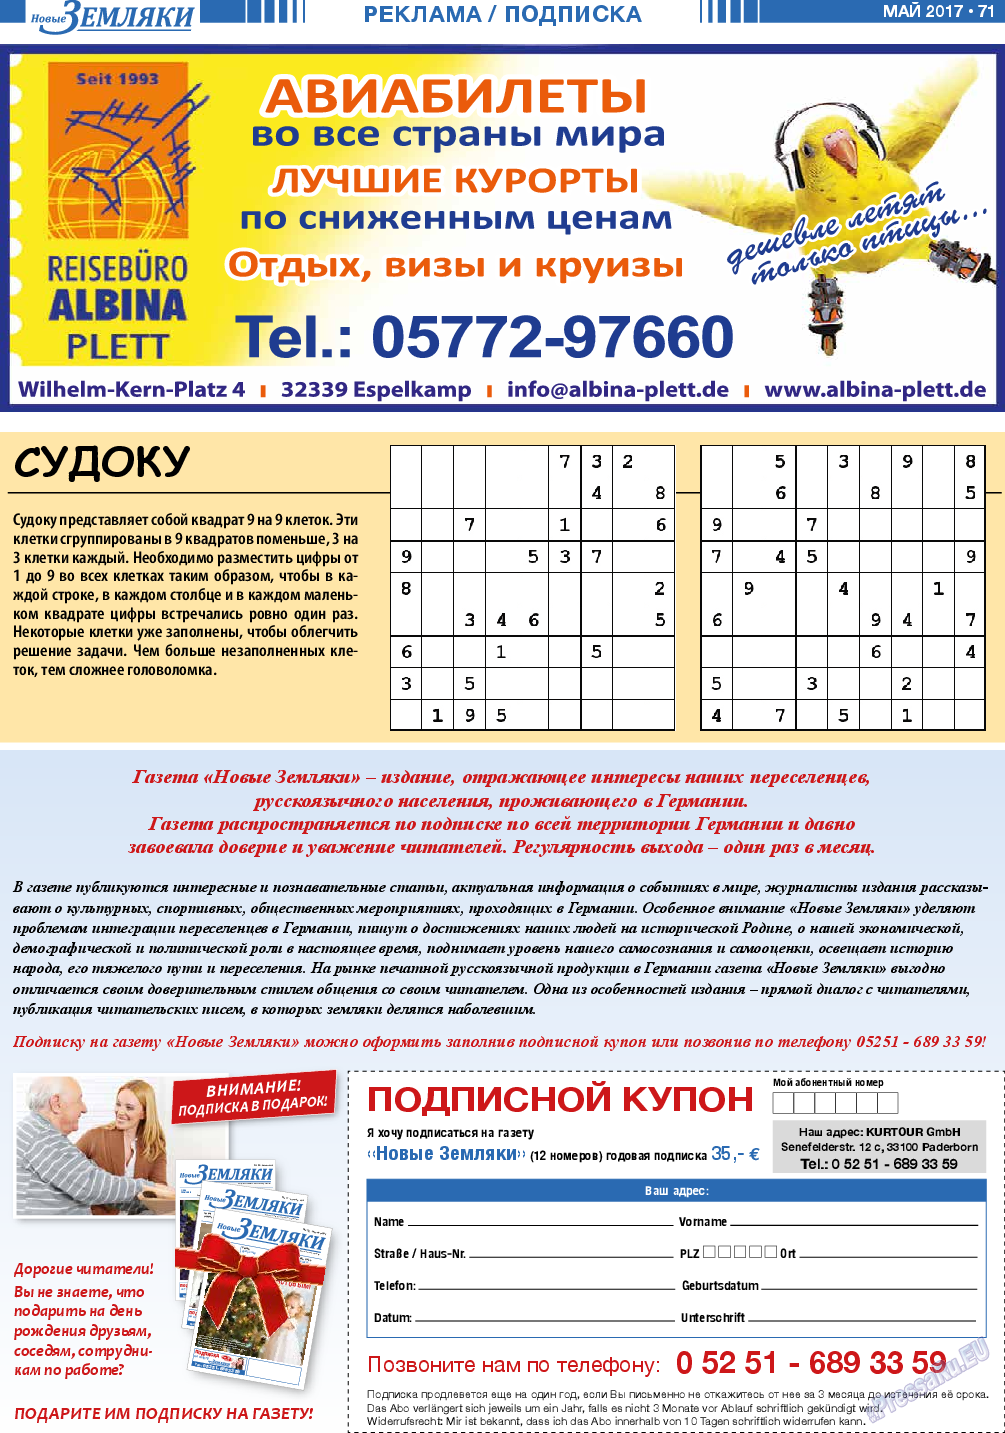 Новые Земляки, газета. 2017 №5 стр.71